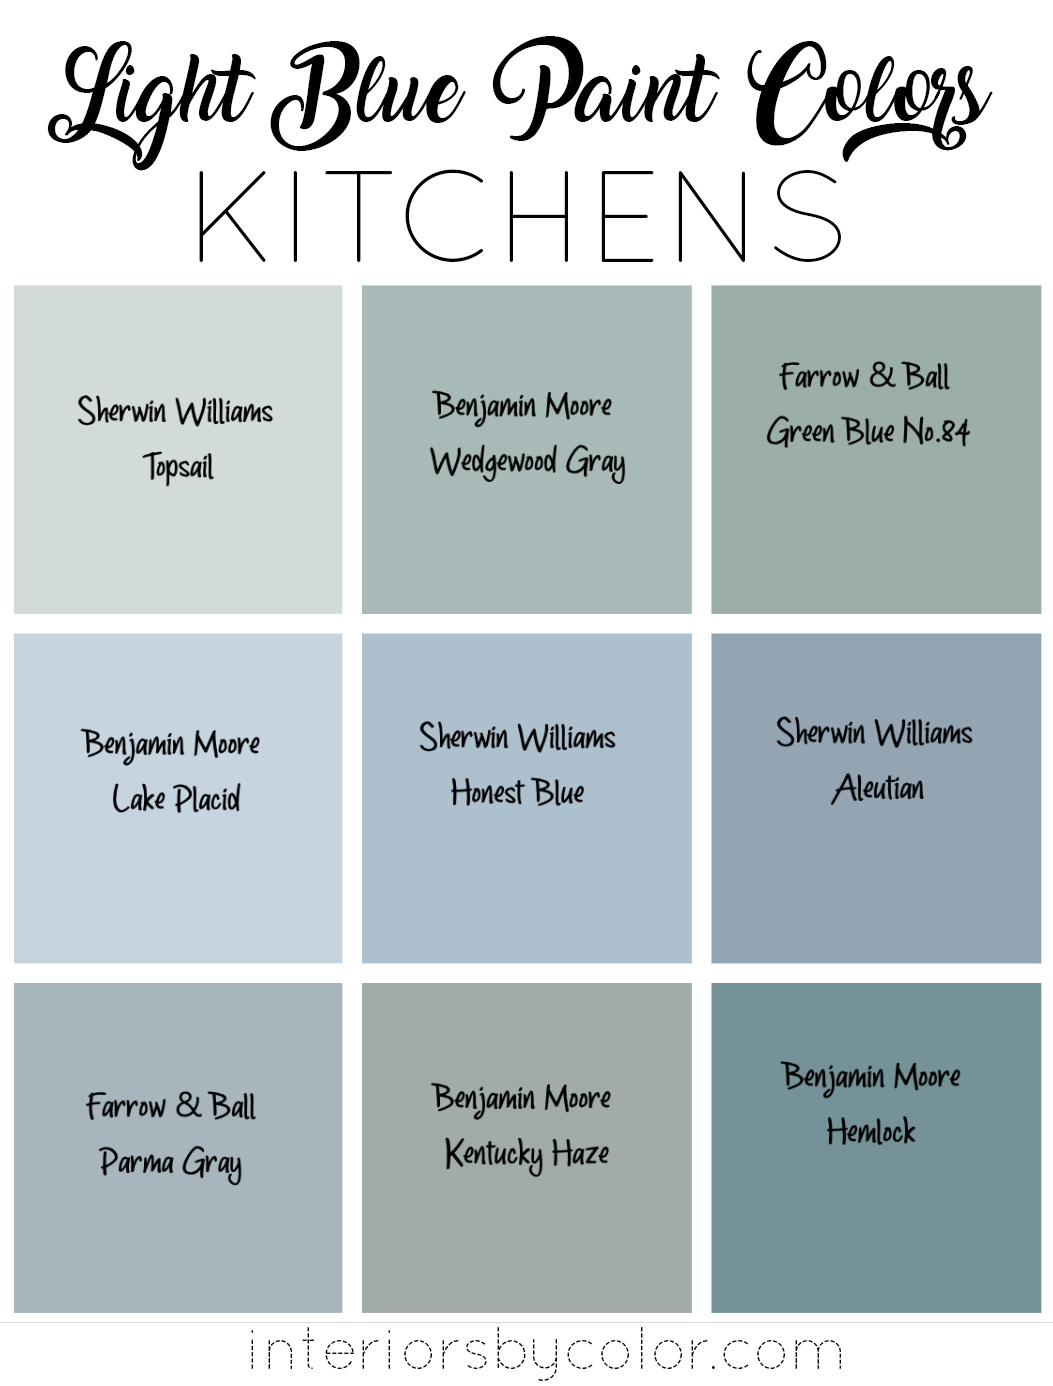 Light blue paint colors for Kitchens